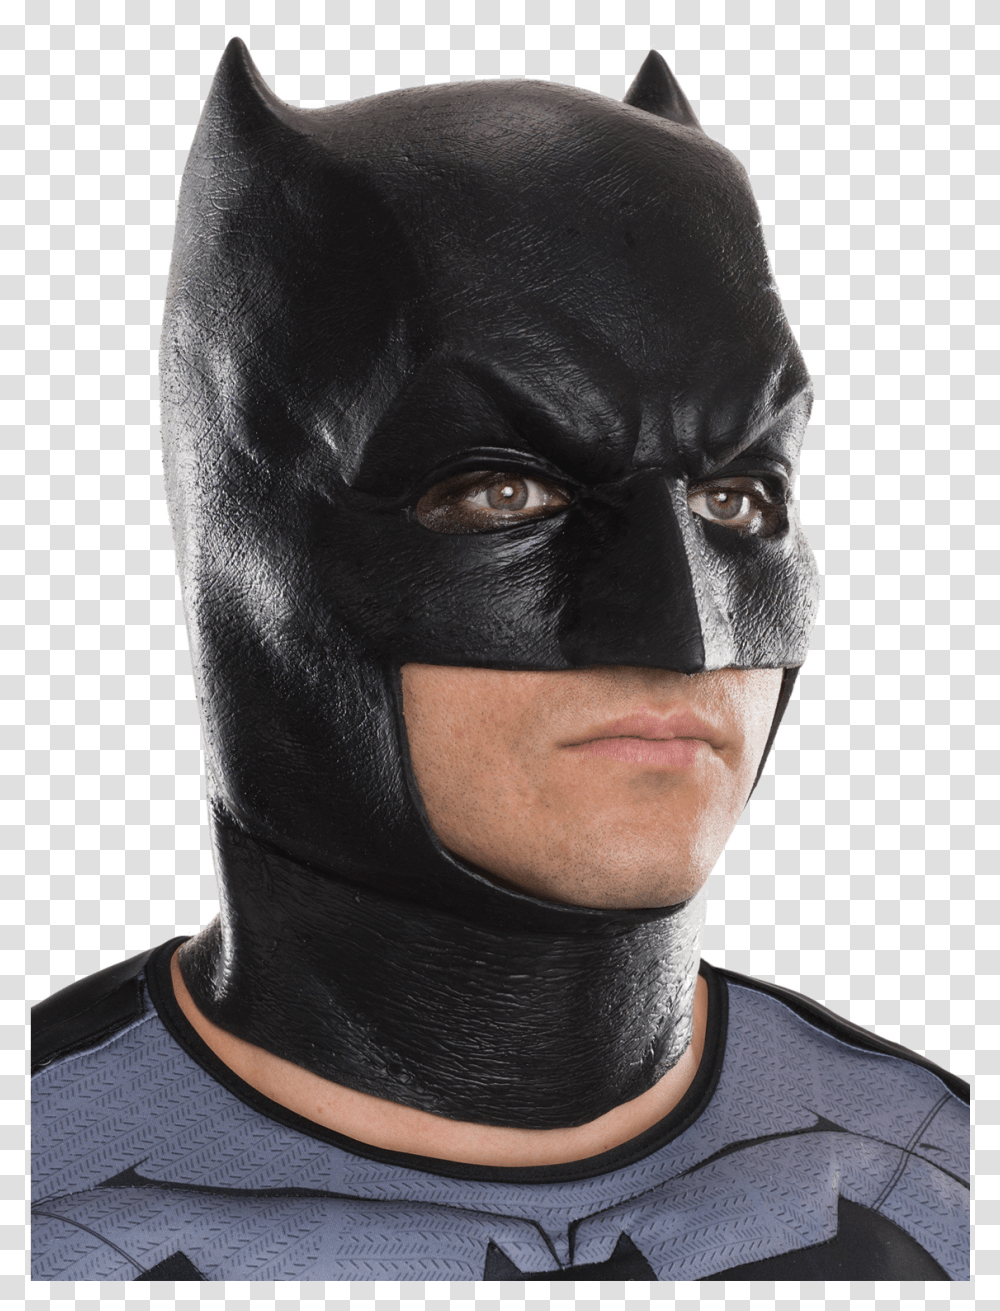 Batman Mask Vinyl Mask, Person, Human, Apparel Transparent Png